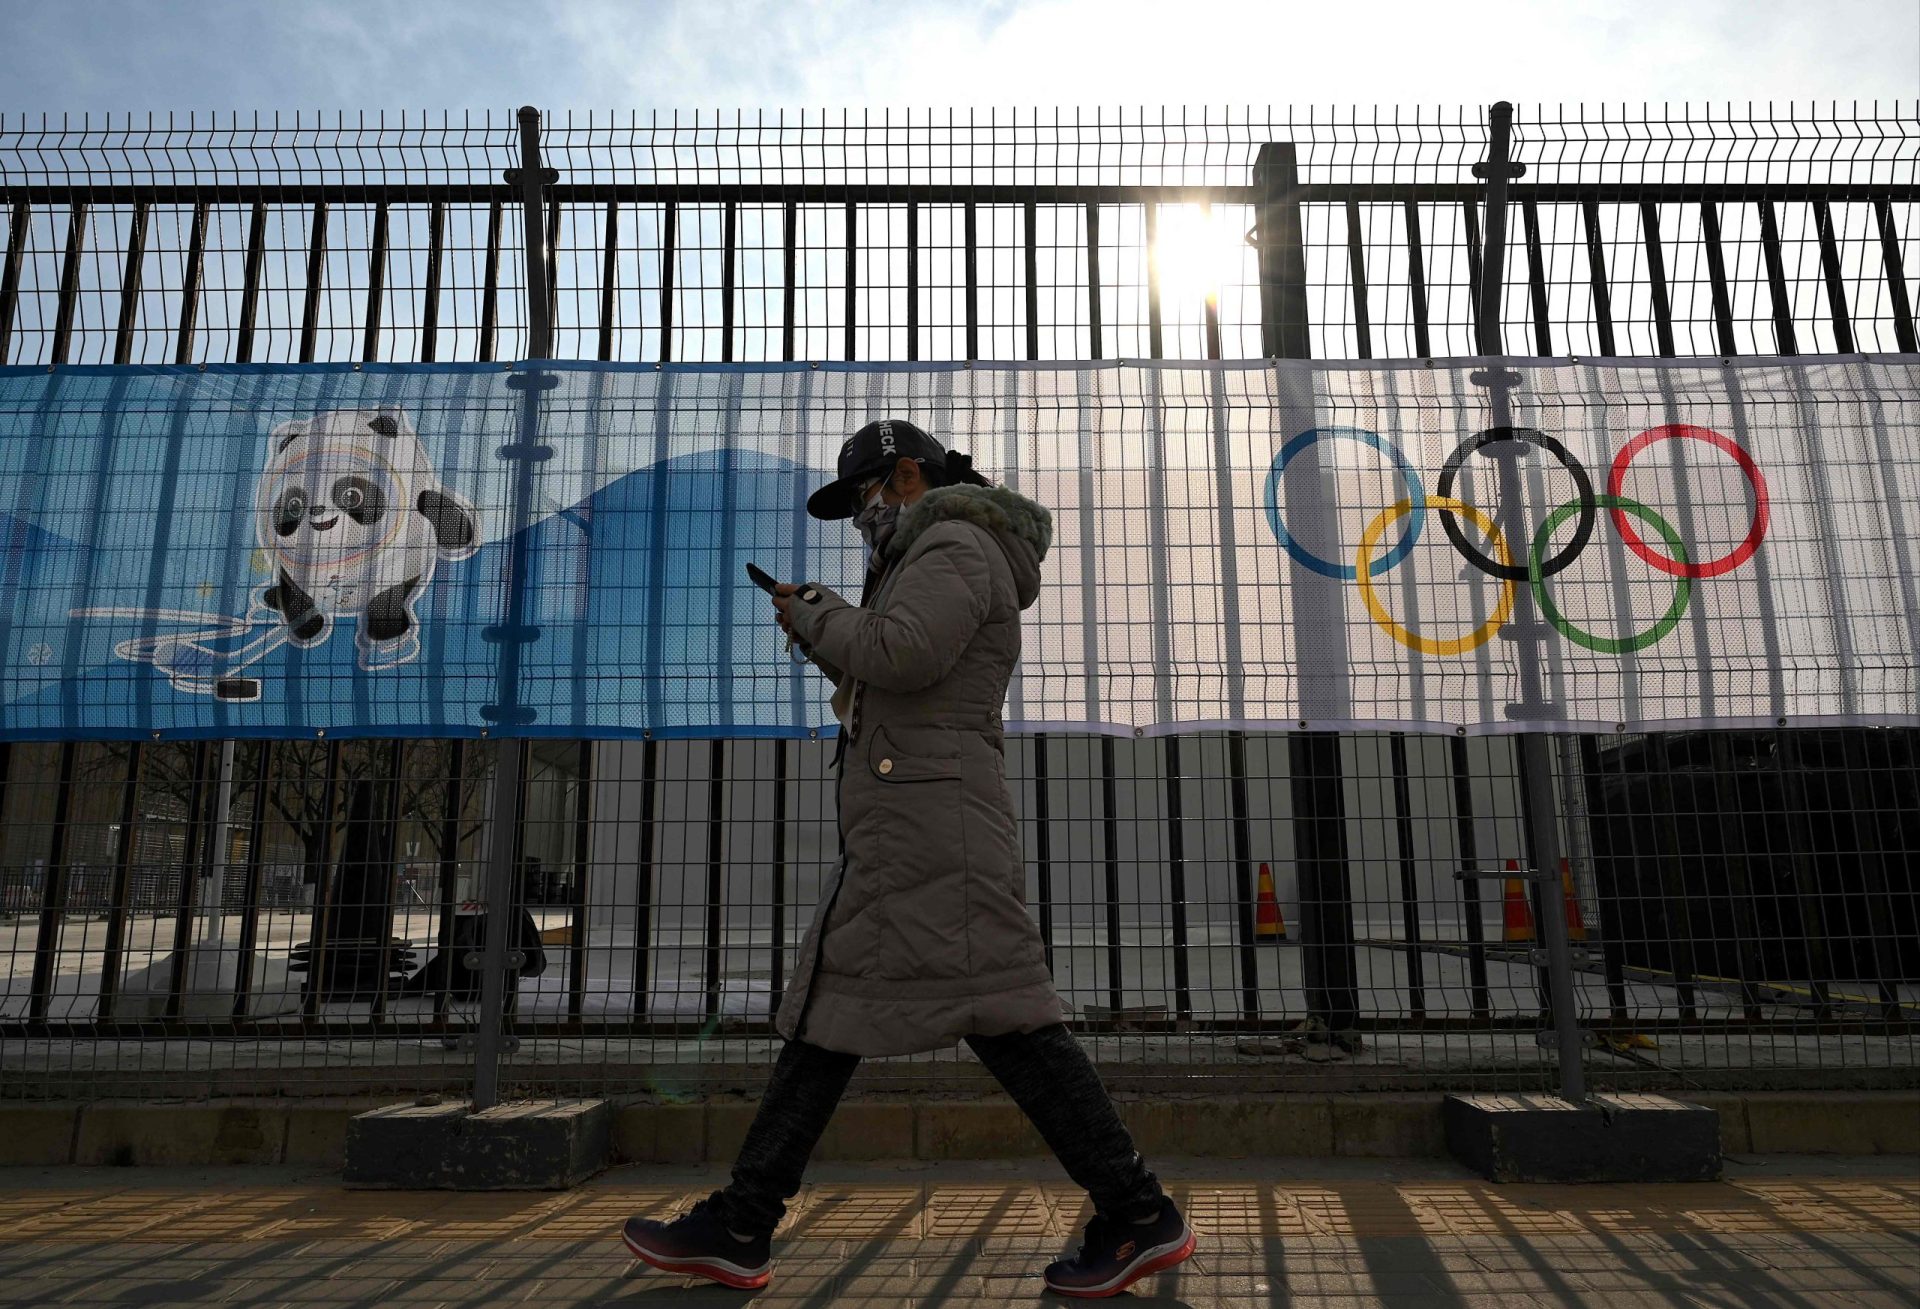 Jogos Olímpicos de Inverno com dezenas de milhões confinados